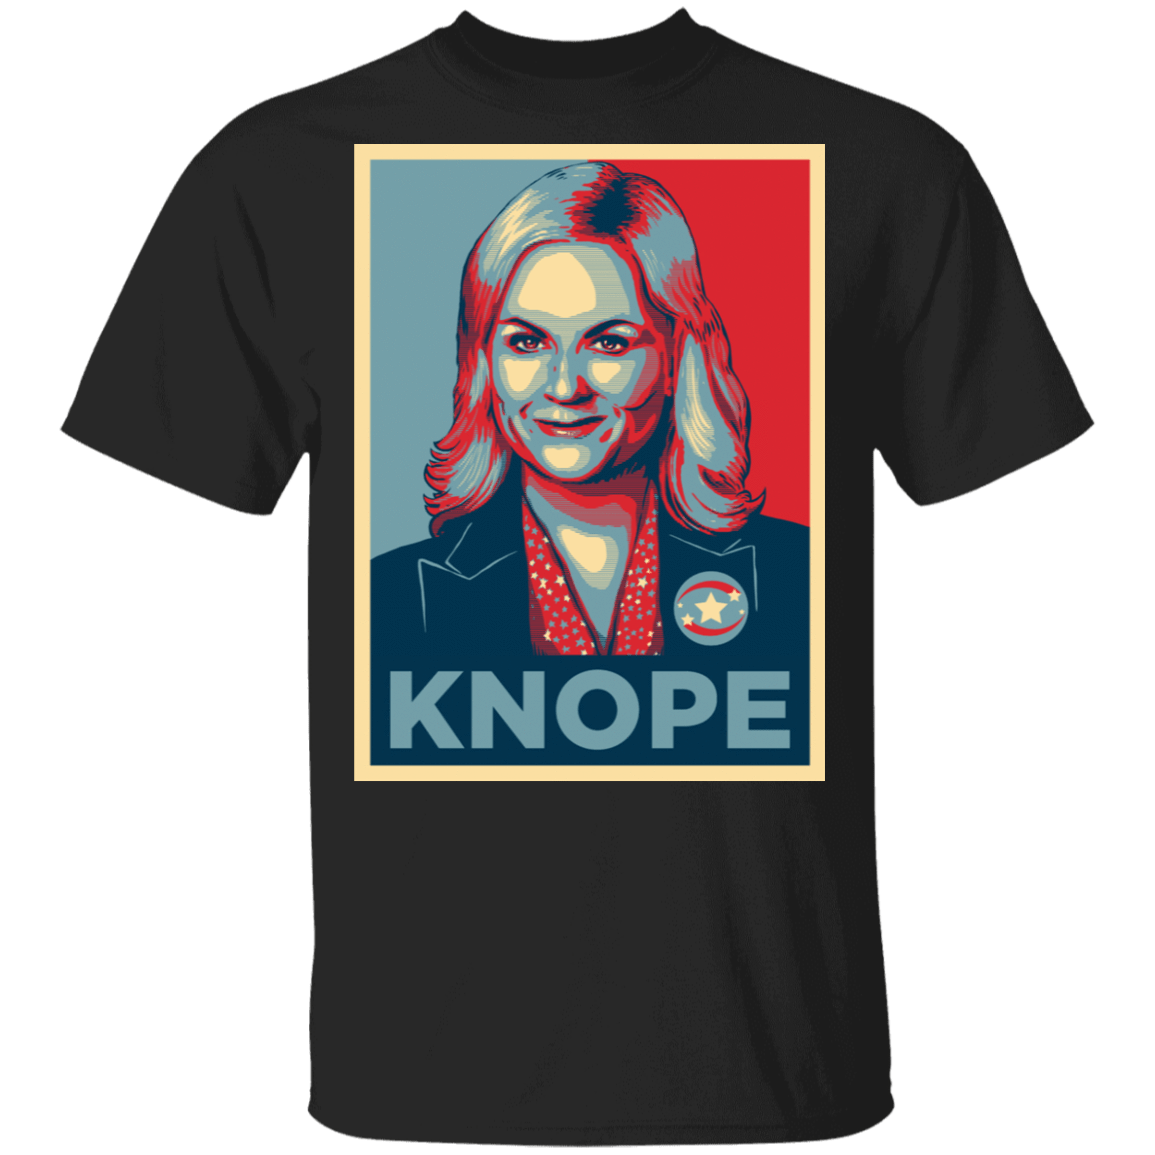 T-Shirts Black / S Knope Hope T-Shirt